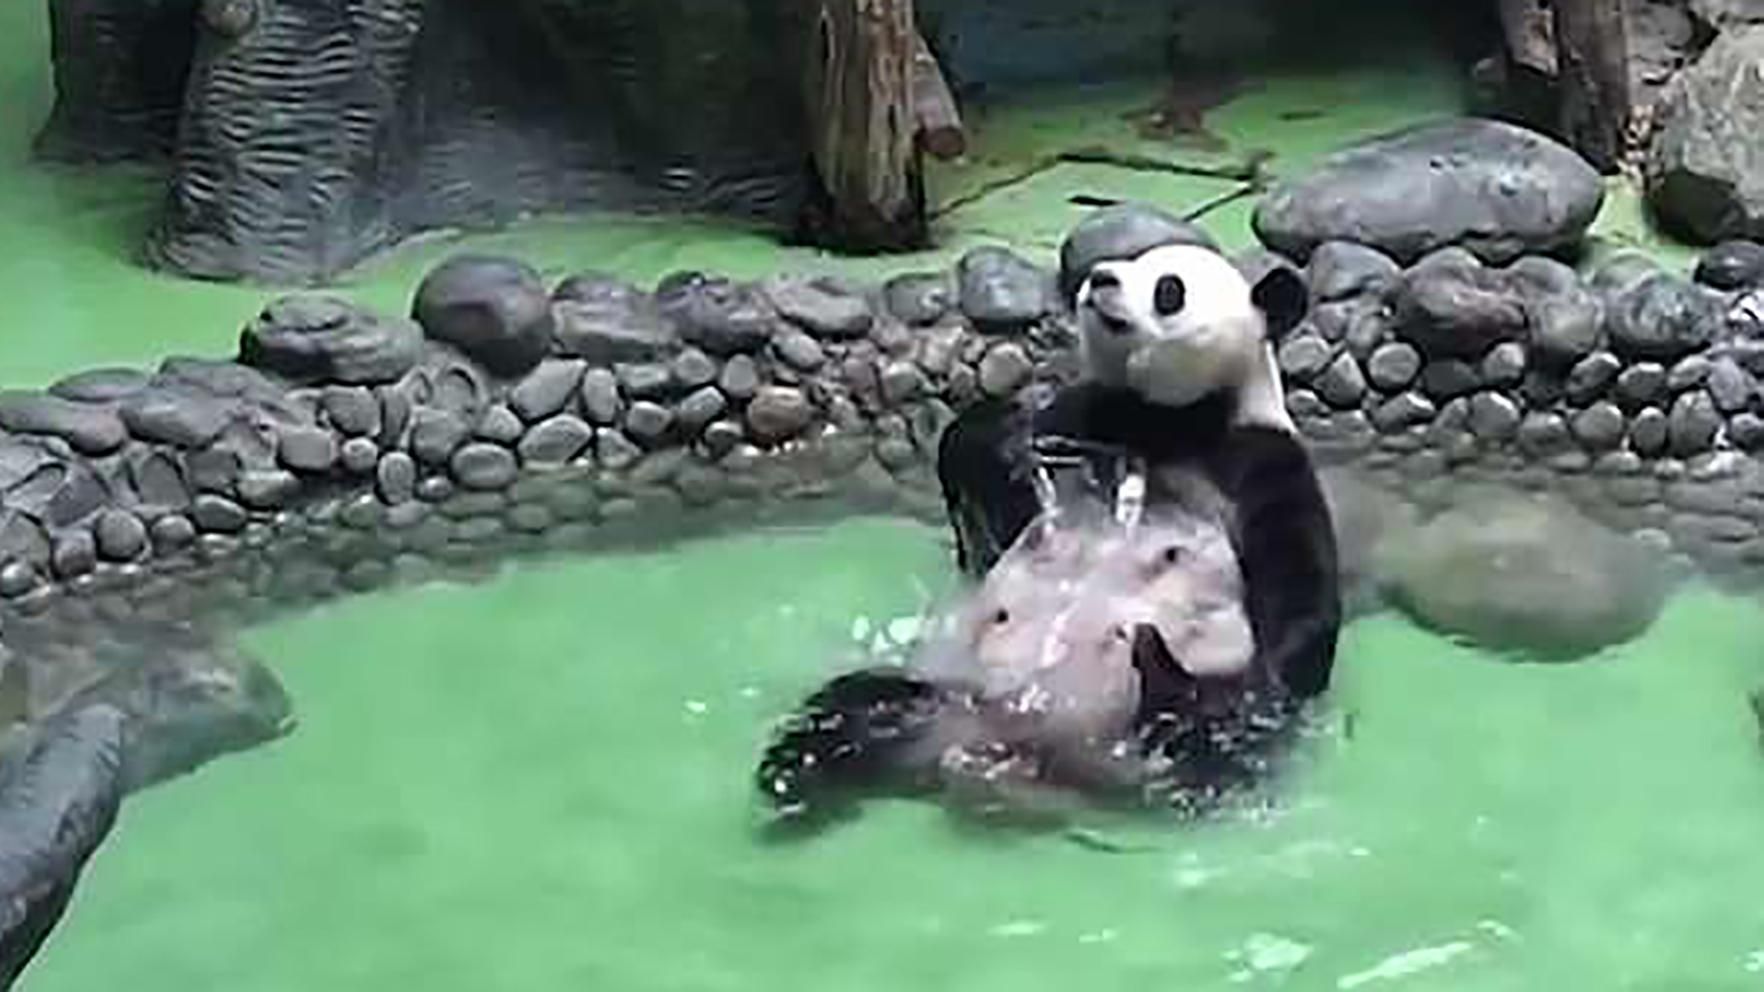 Панда в бассейне спасается от жары обливанием: смешное видео